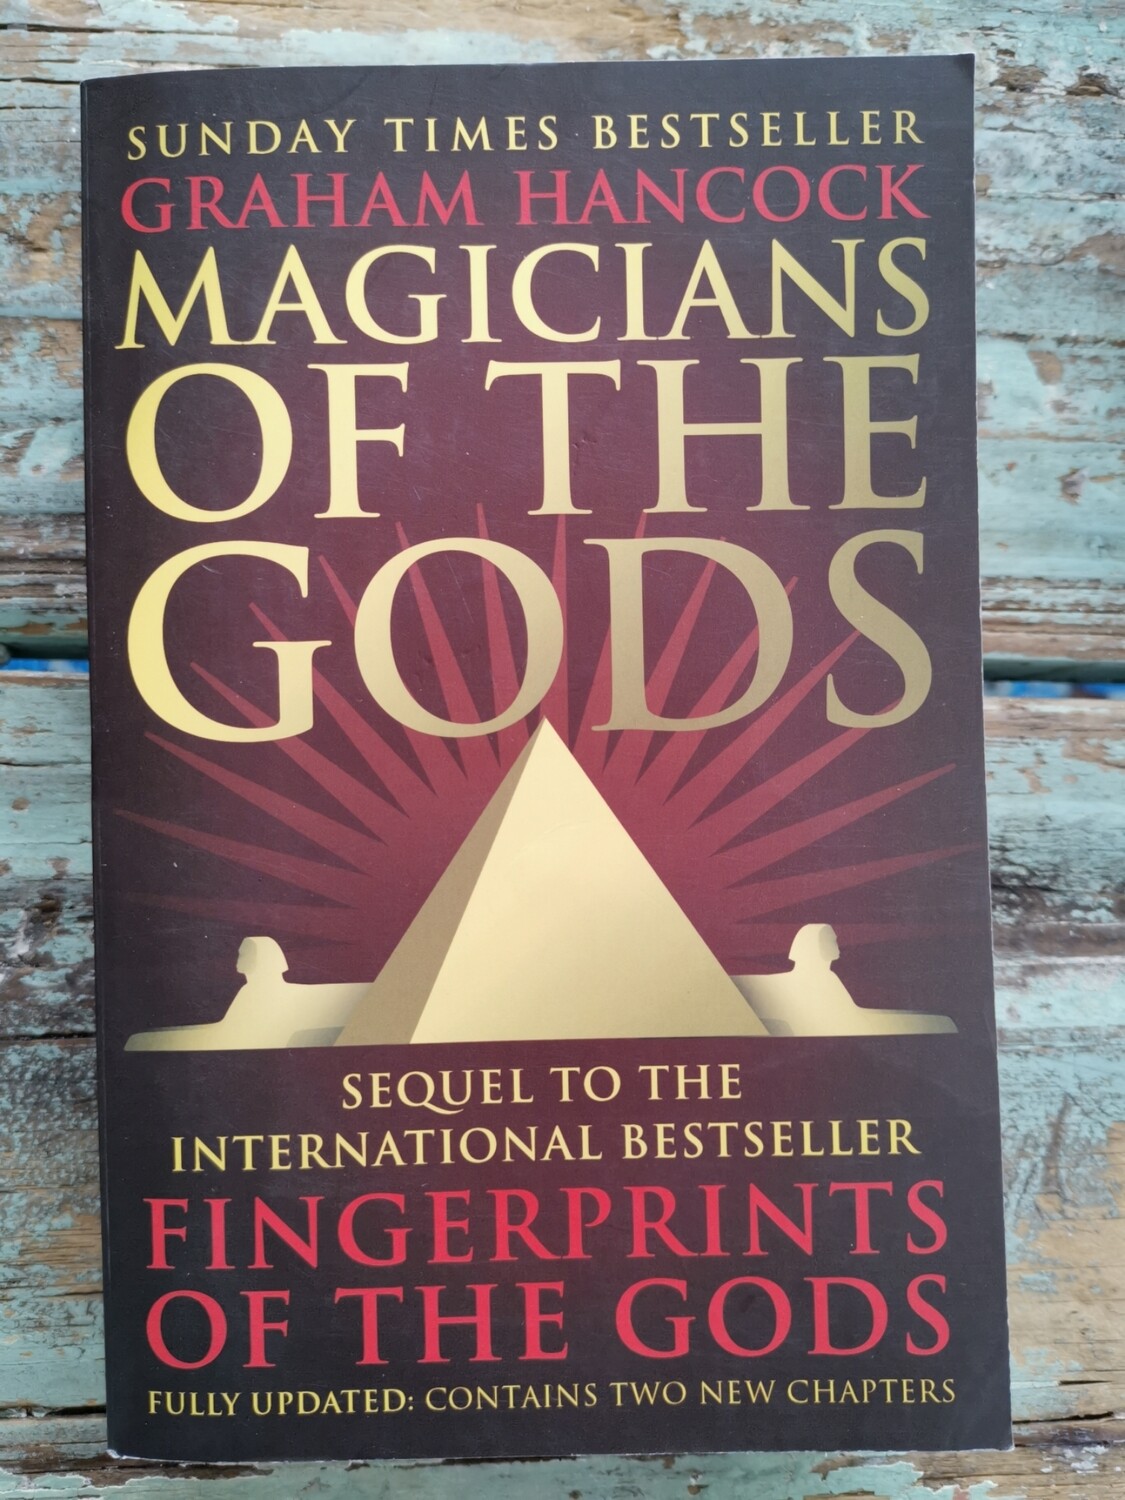 Magicians of the Gods, Graham Hancock